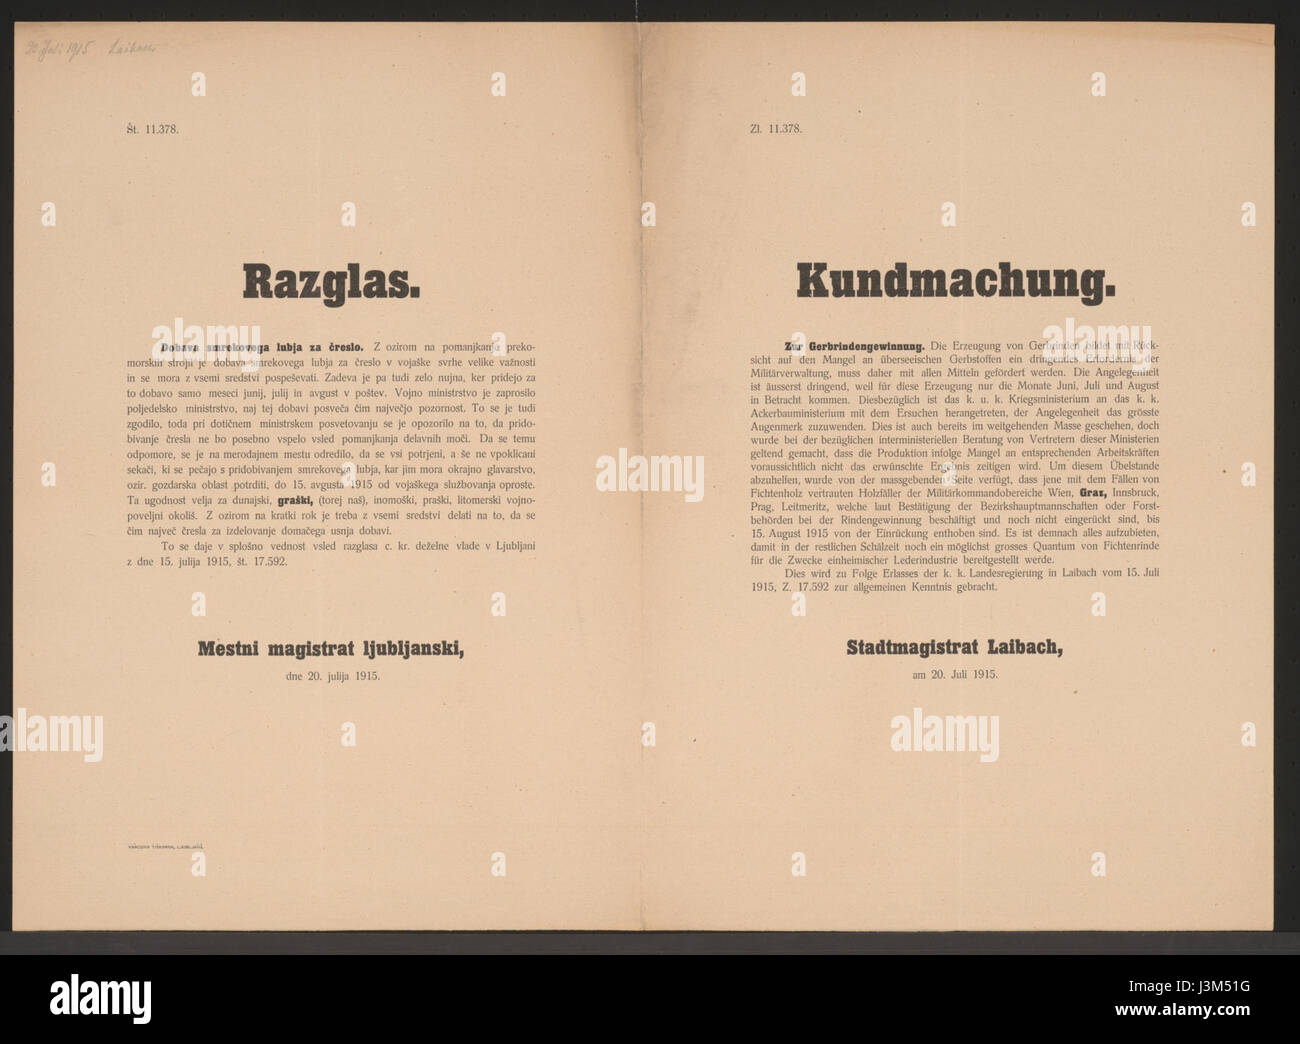 Gerbrindengewinnung   Bekanntmachung   Laibach   Mehrsprachiges Plakat 1915 Stock Photo